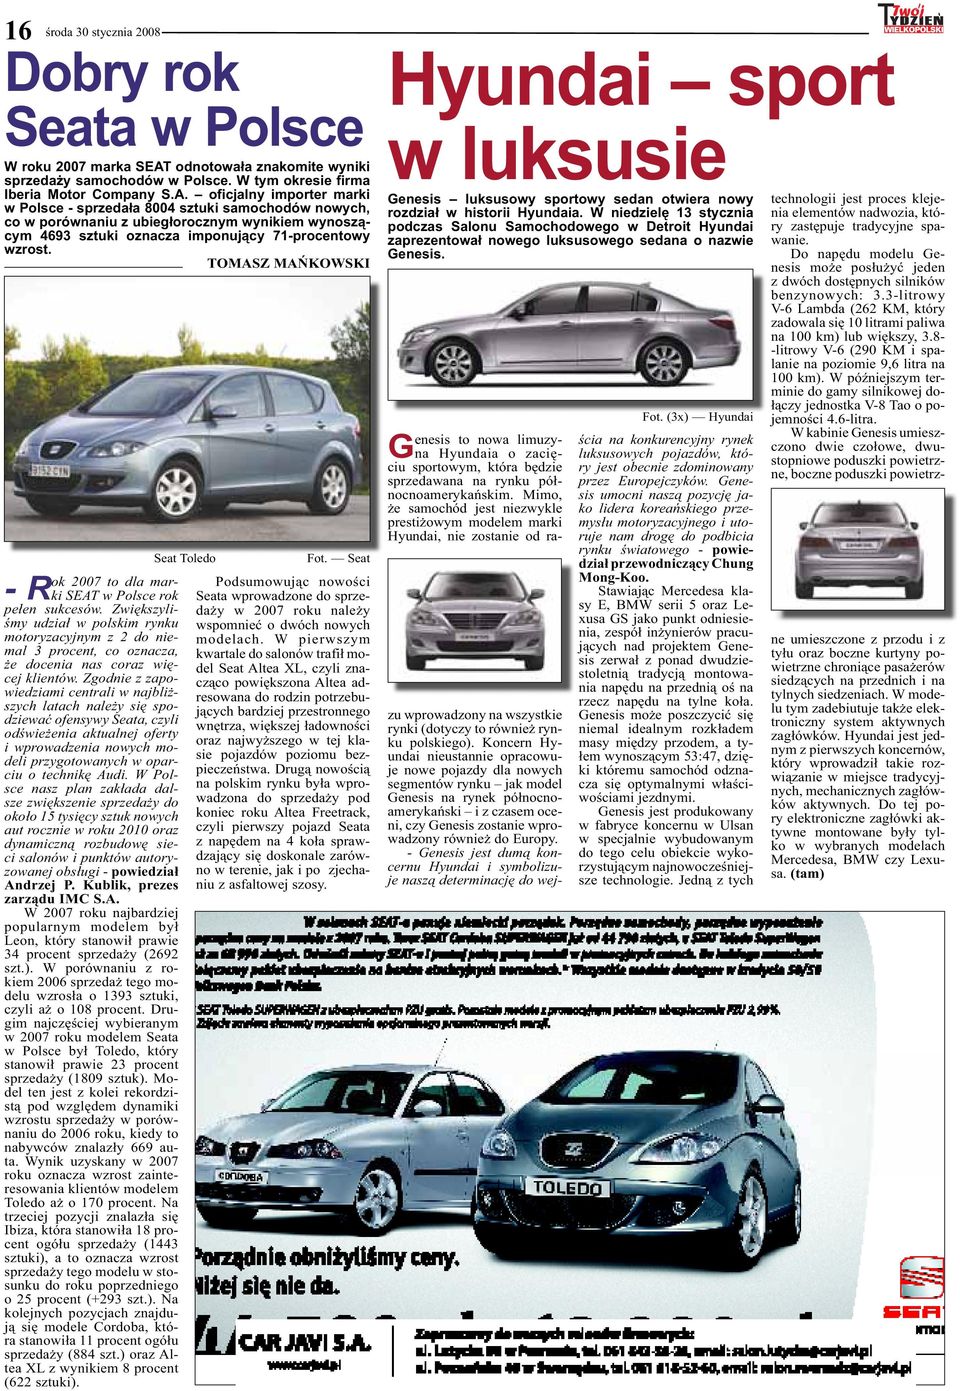 oficjalny importer marki w Polsce - sprzedała 8004 sztuki samochodów nowych, co w porównaniu z ubiegłorocznym wynikiem wynoszącym 4693 sztuki oznacza imponujący 71-procentowy wzrost.